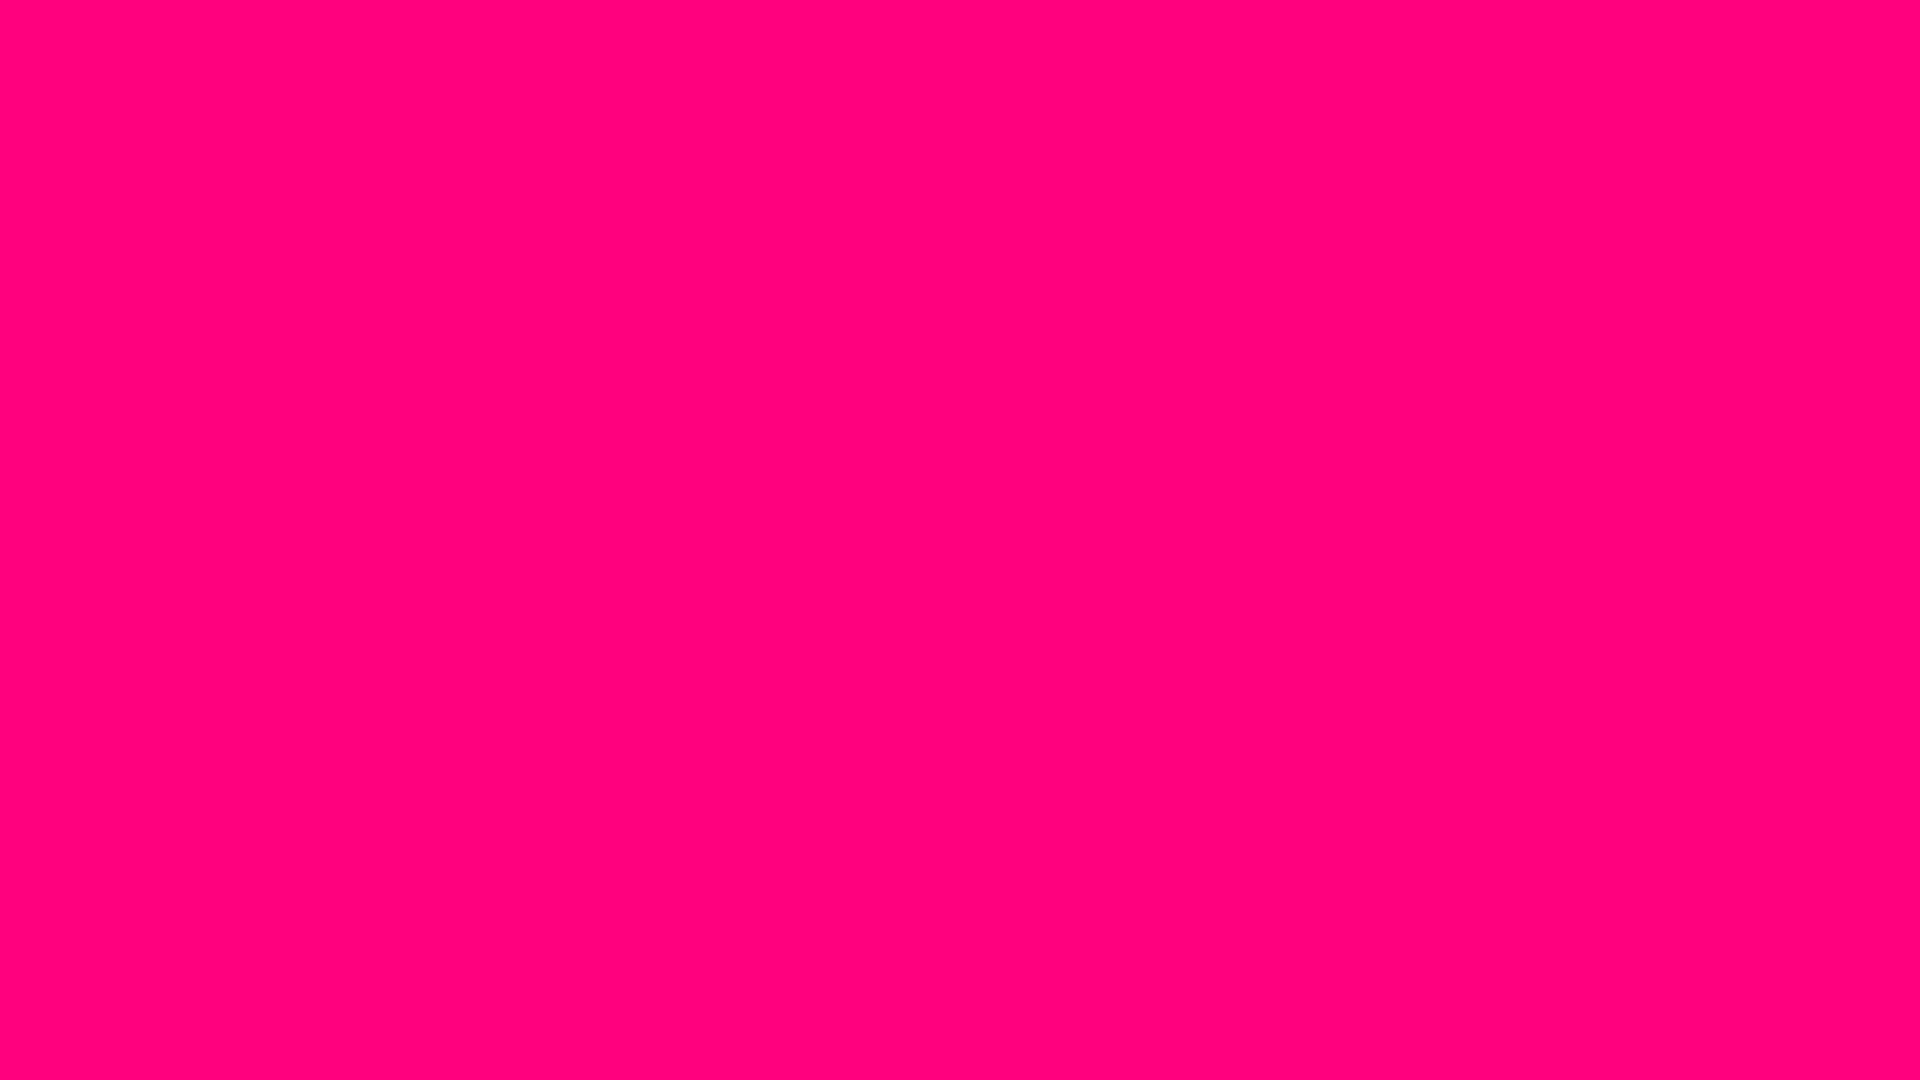 Màu hồng đậm: Bạn yêu thích màu hồng đậm? Đến ngay để xem những hình ảnh vô cùng đẹp mắt với sắc hồng đậm cuốn hút này. Bạn sẽ ngỡ ngàng với sự pha trộn giữa màu hồng đậm và những cảnh quan tuyệt đẹp.